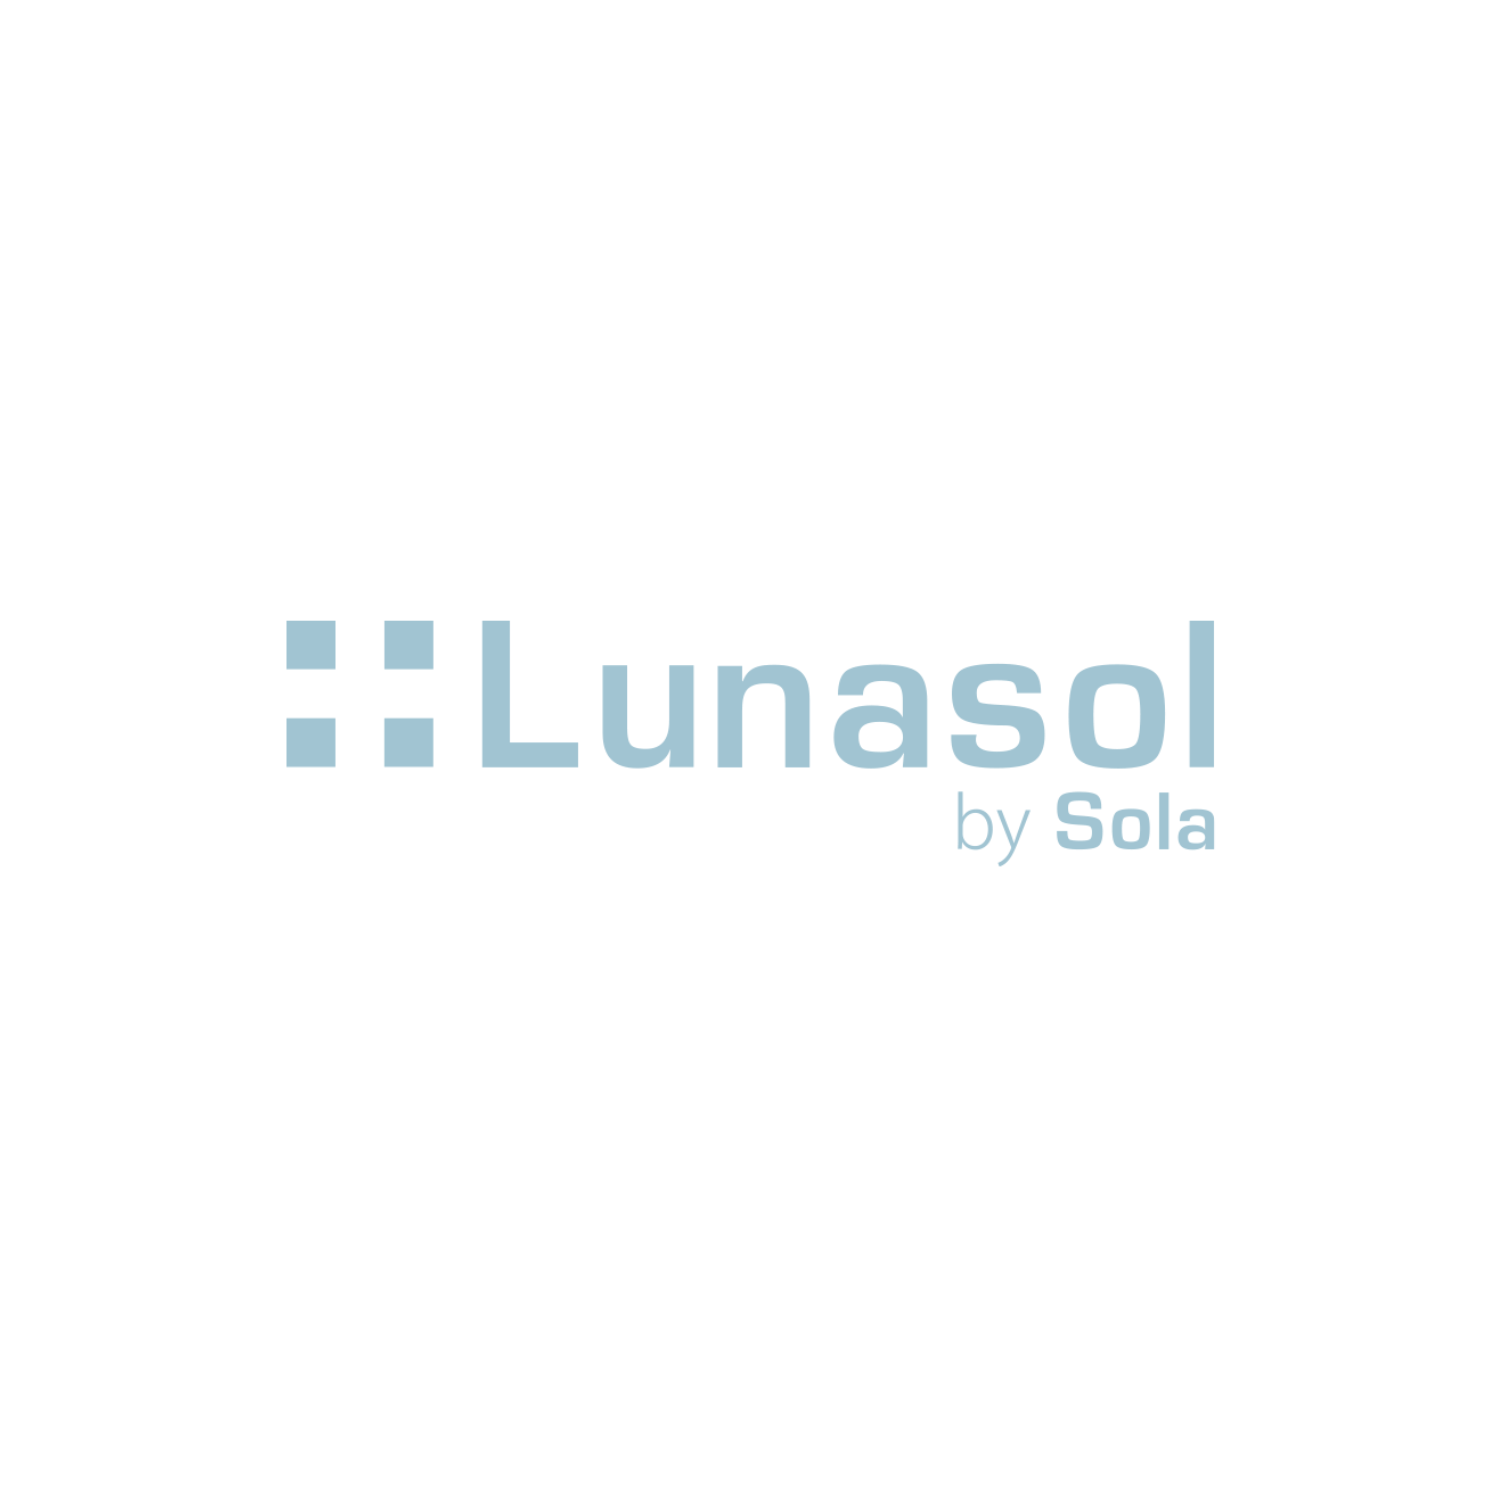 lunasol-by-sola-logo